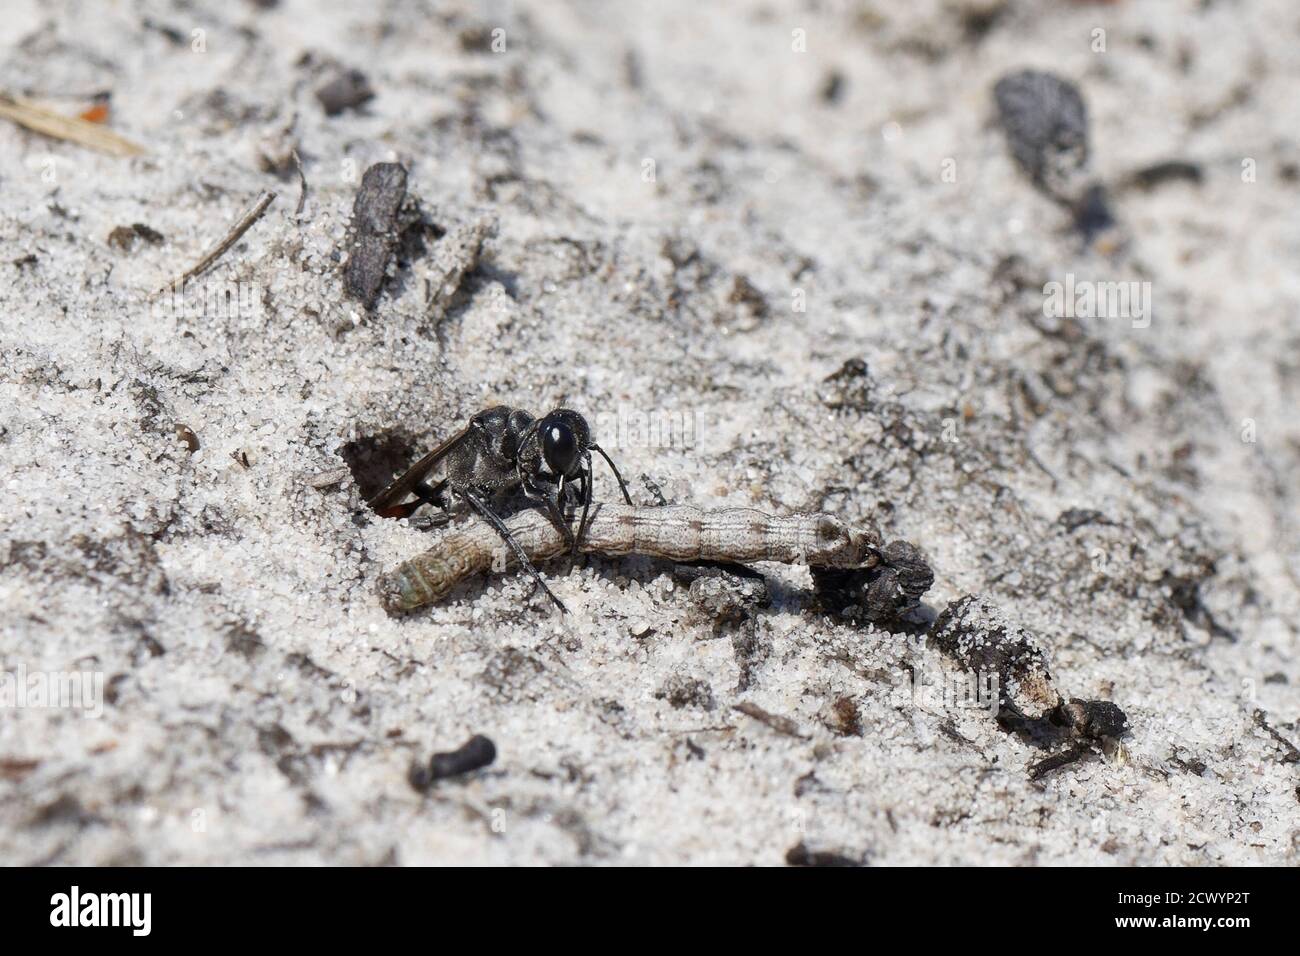 La vespa di sabbia di Heath (Ammophila pubescens) che tira un bruco paralizzato tenuto nelle sue mandibole nel suo burrow per alimentare la sua larva crescente, la brughiera di Dorset, Regno Unito Foto Stock